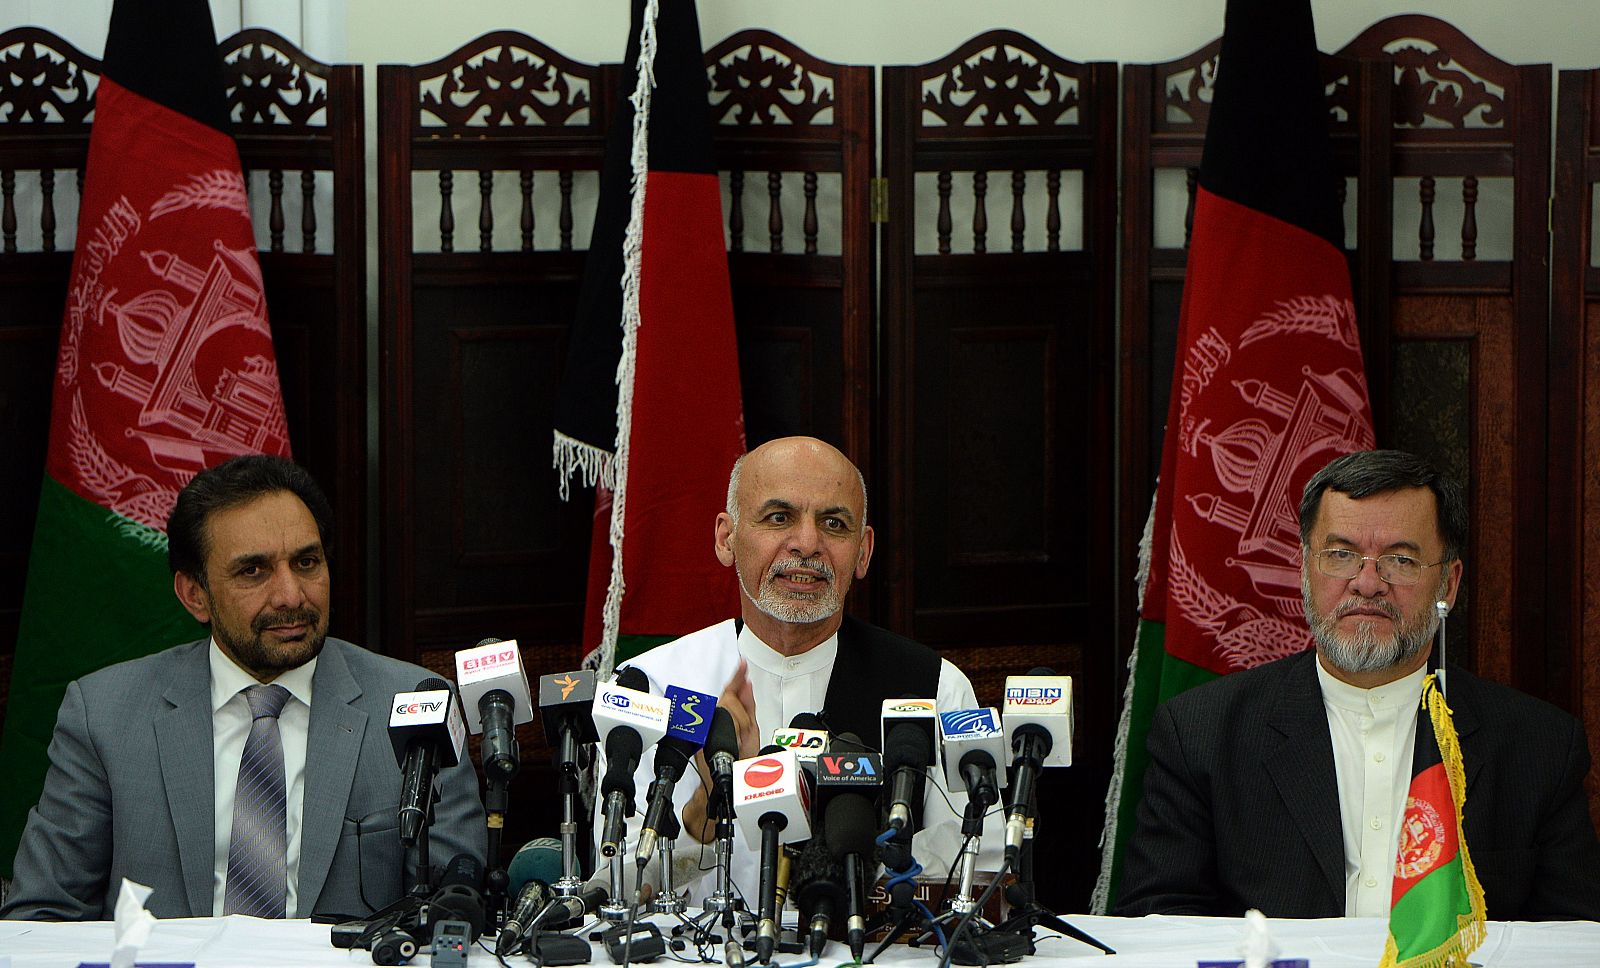 El candidato presidencia de Afganistán, Ashraf Ghani, en una fotografía de archivo